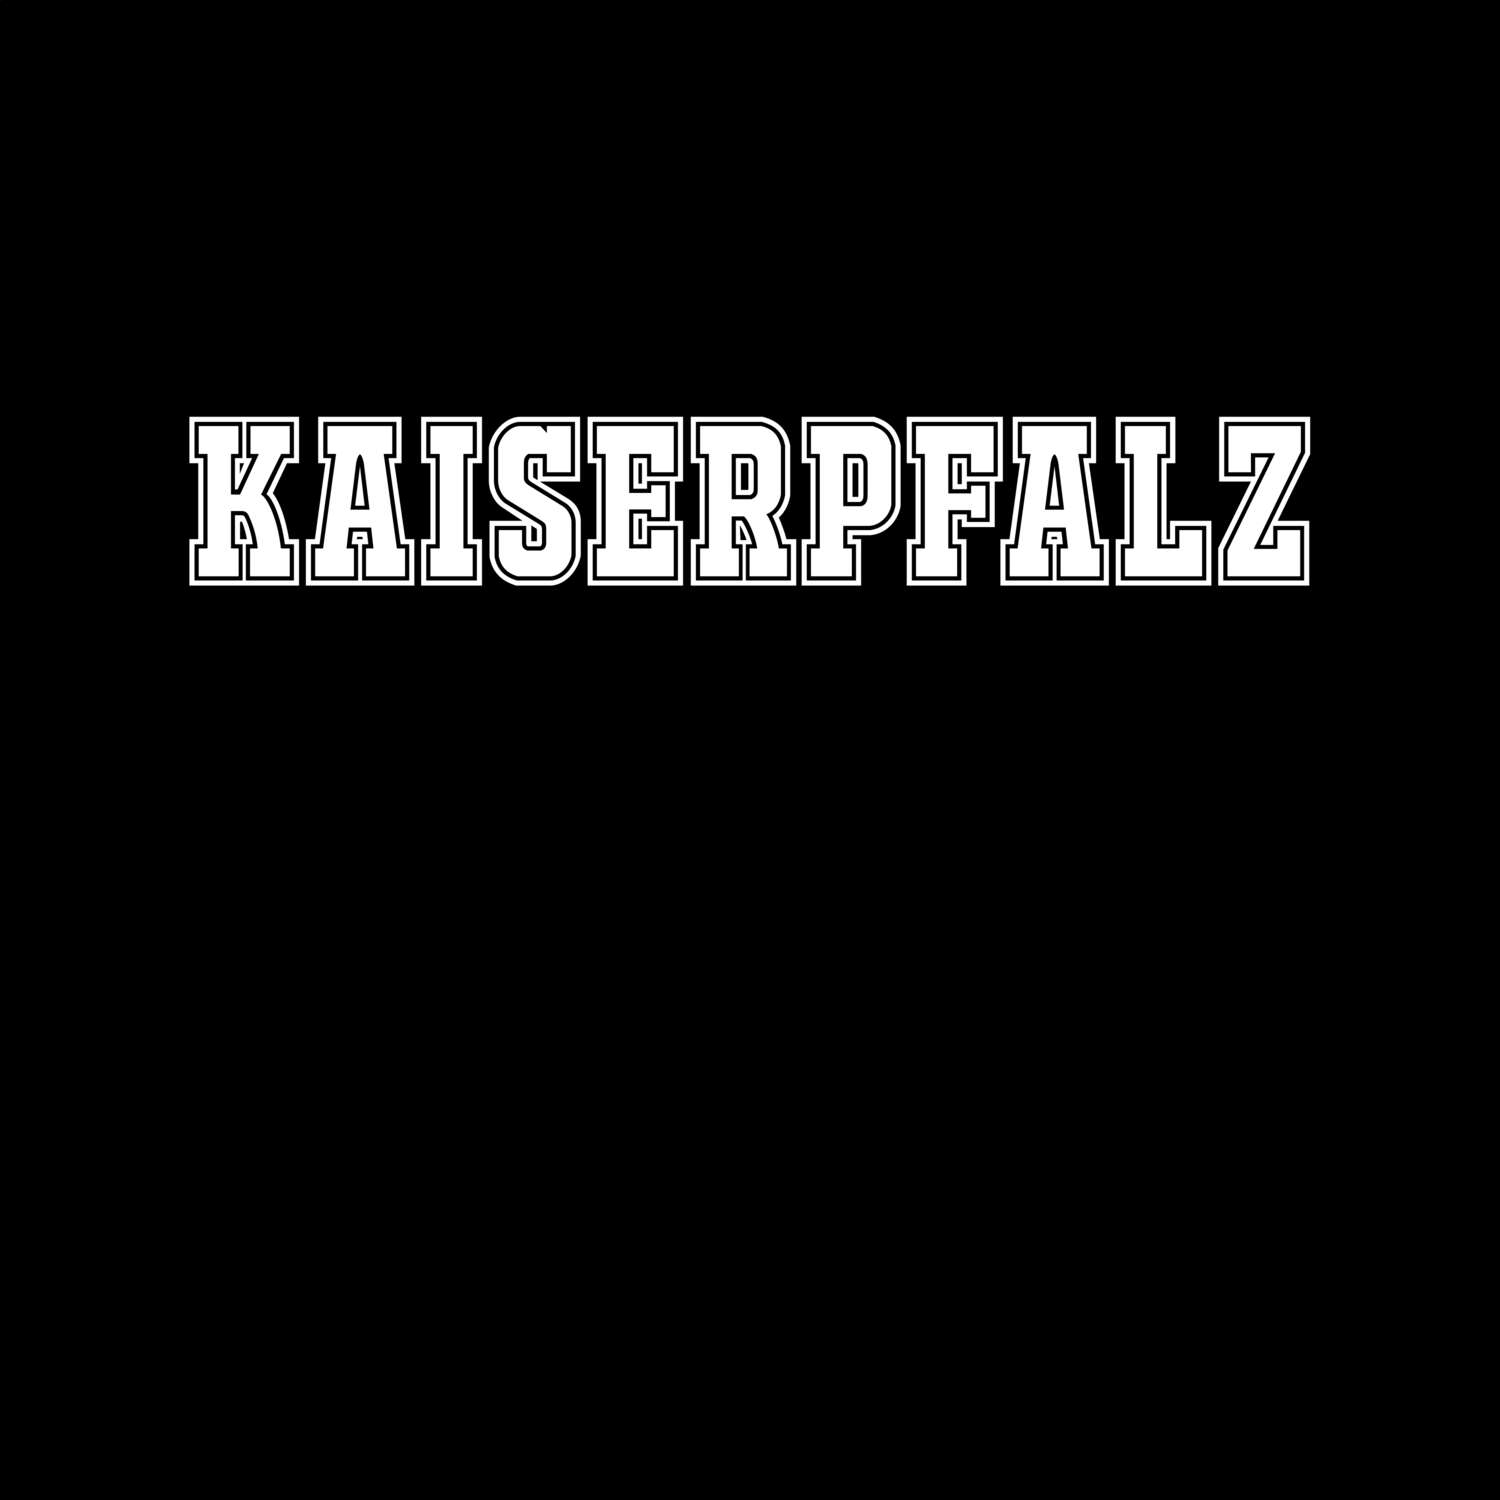 Kaiserpfalz T-Shirt »Classic«